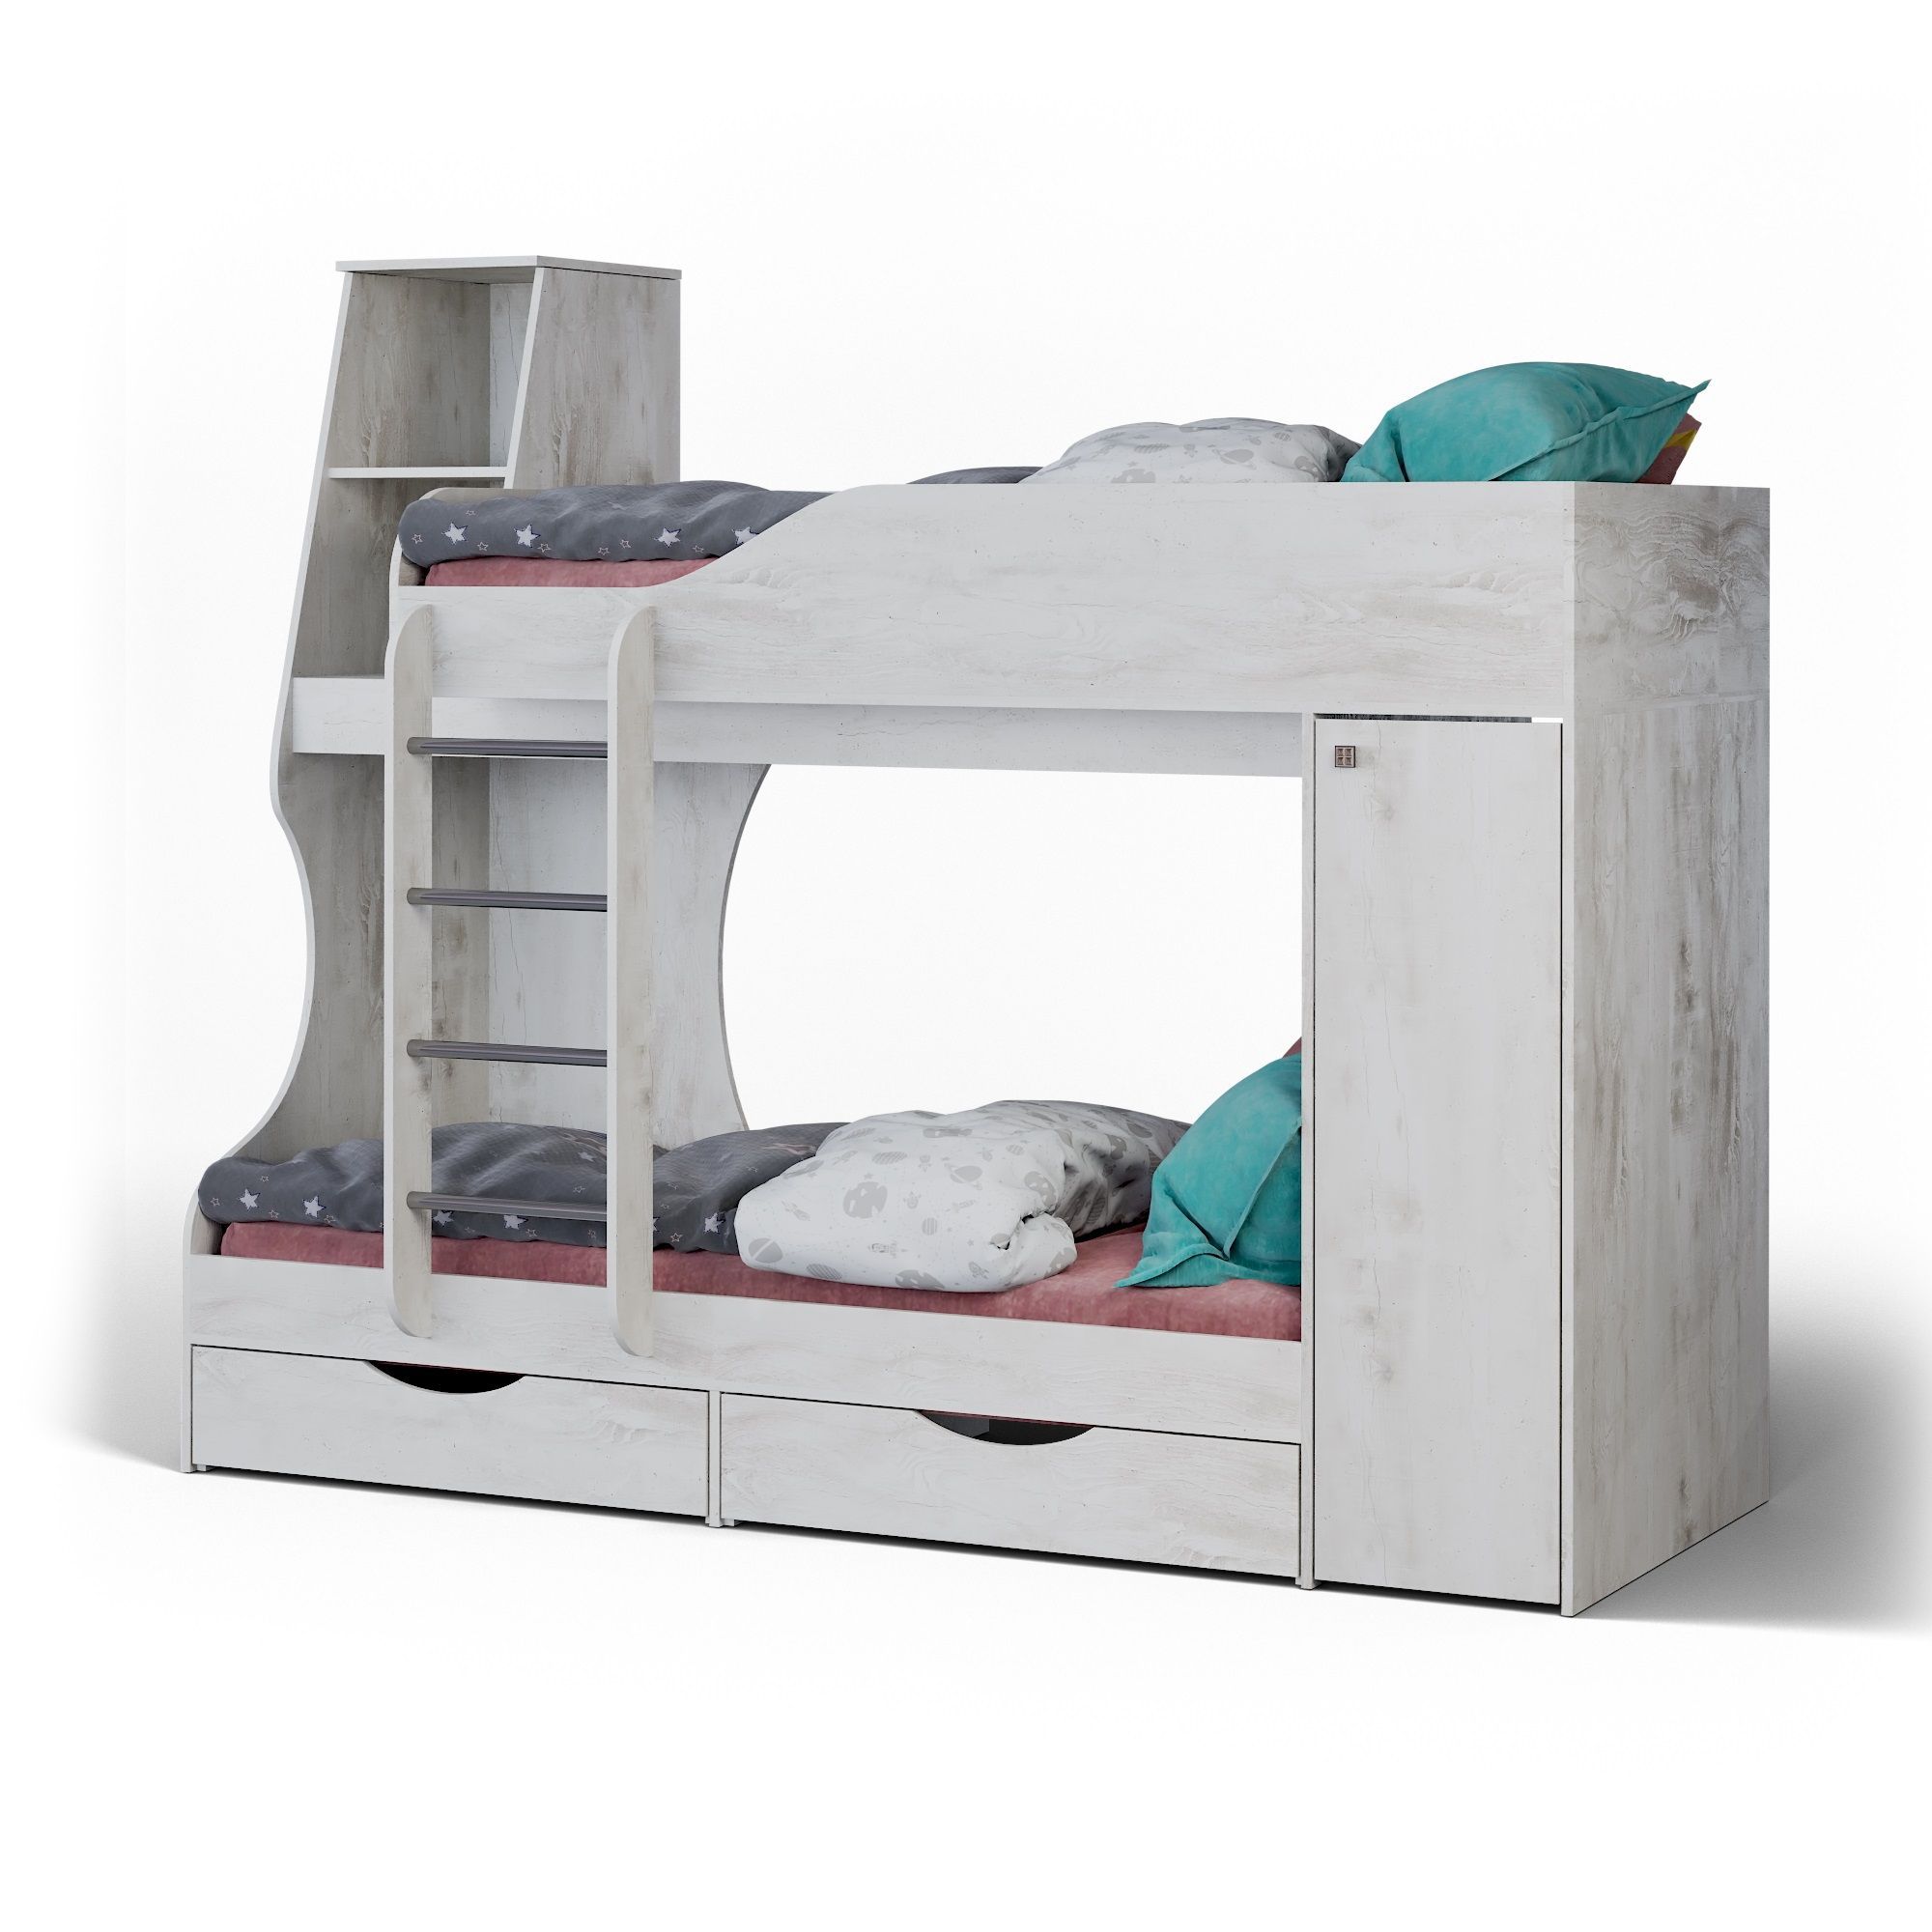 Калинковичский мебельный комбинат двухъярусные кровати